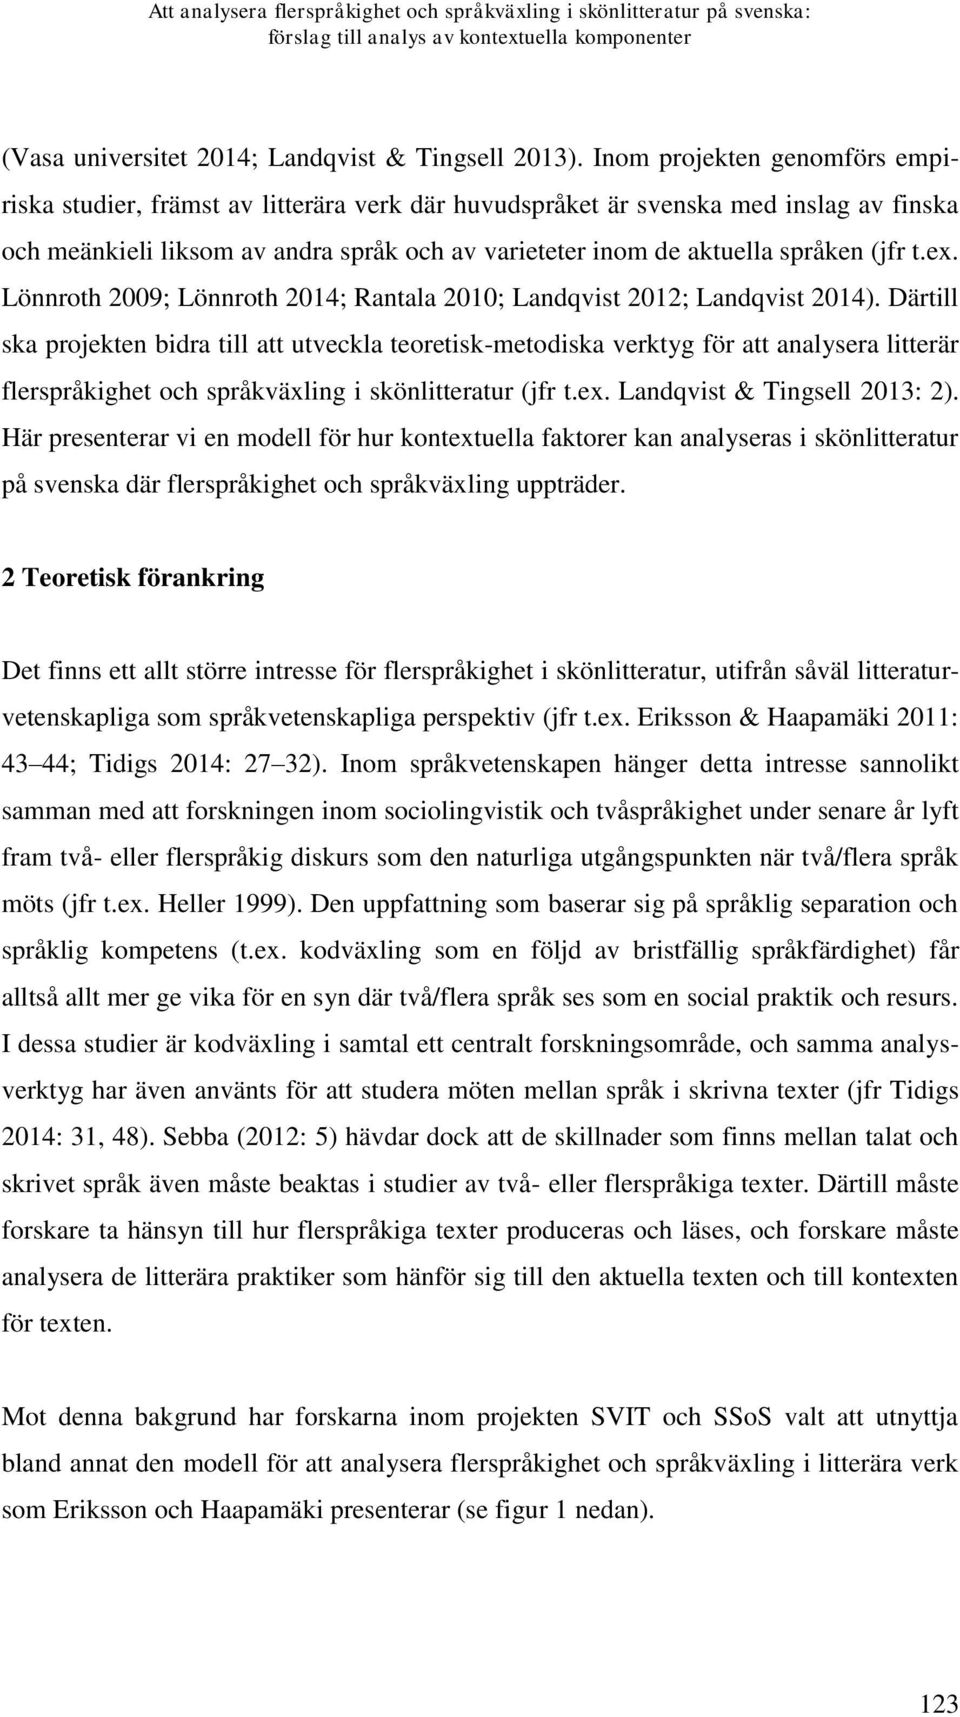 (jfr t.ex. Lönnroth 2009; Lönnroth 2014; Rantala 2010; Landqvist 2012; Landqvist 2014).